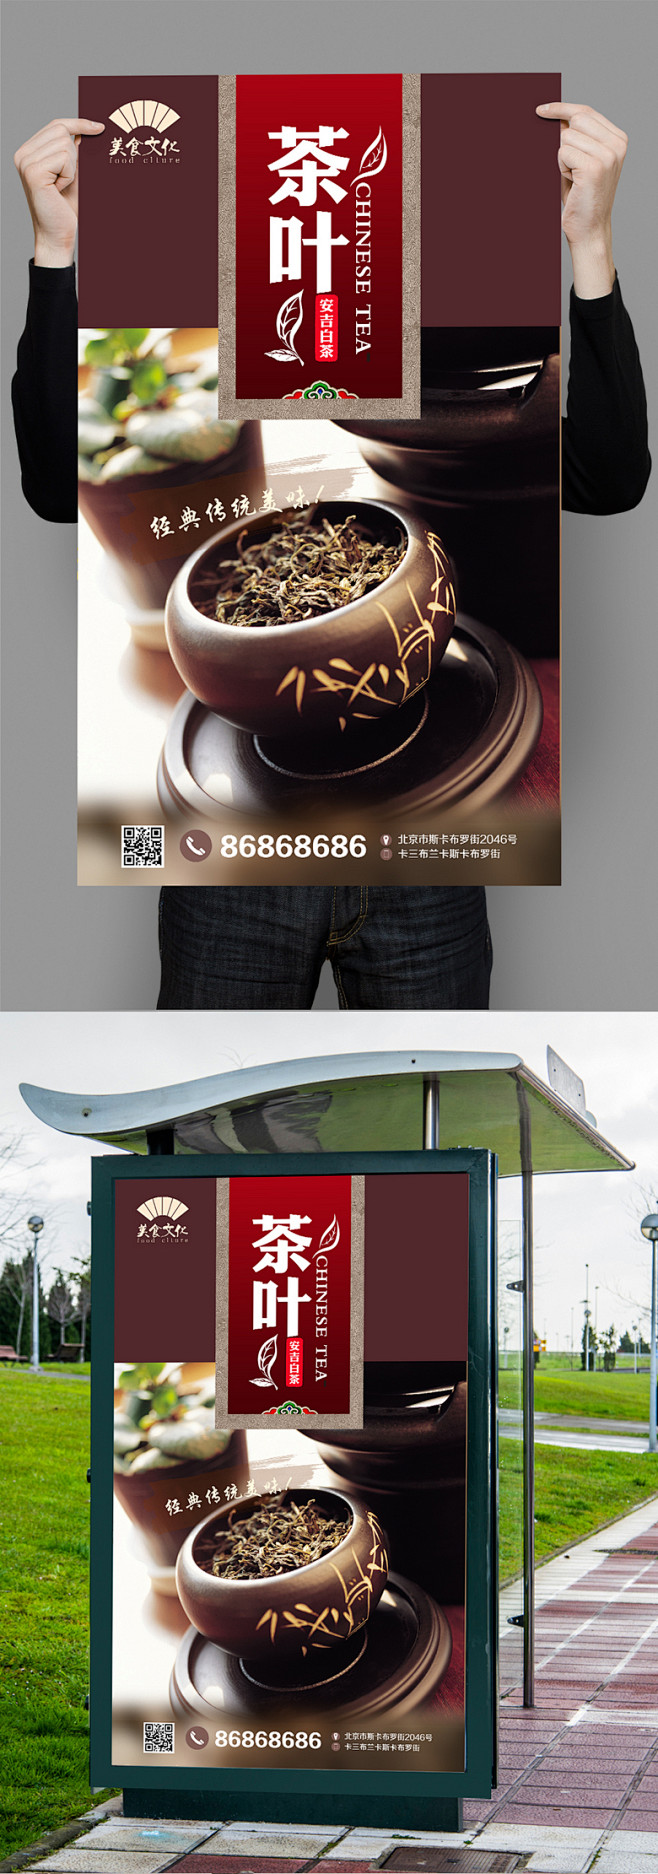 安吉白茶宣传海报设计 安吉白茶海报 安吉...